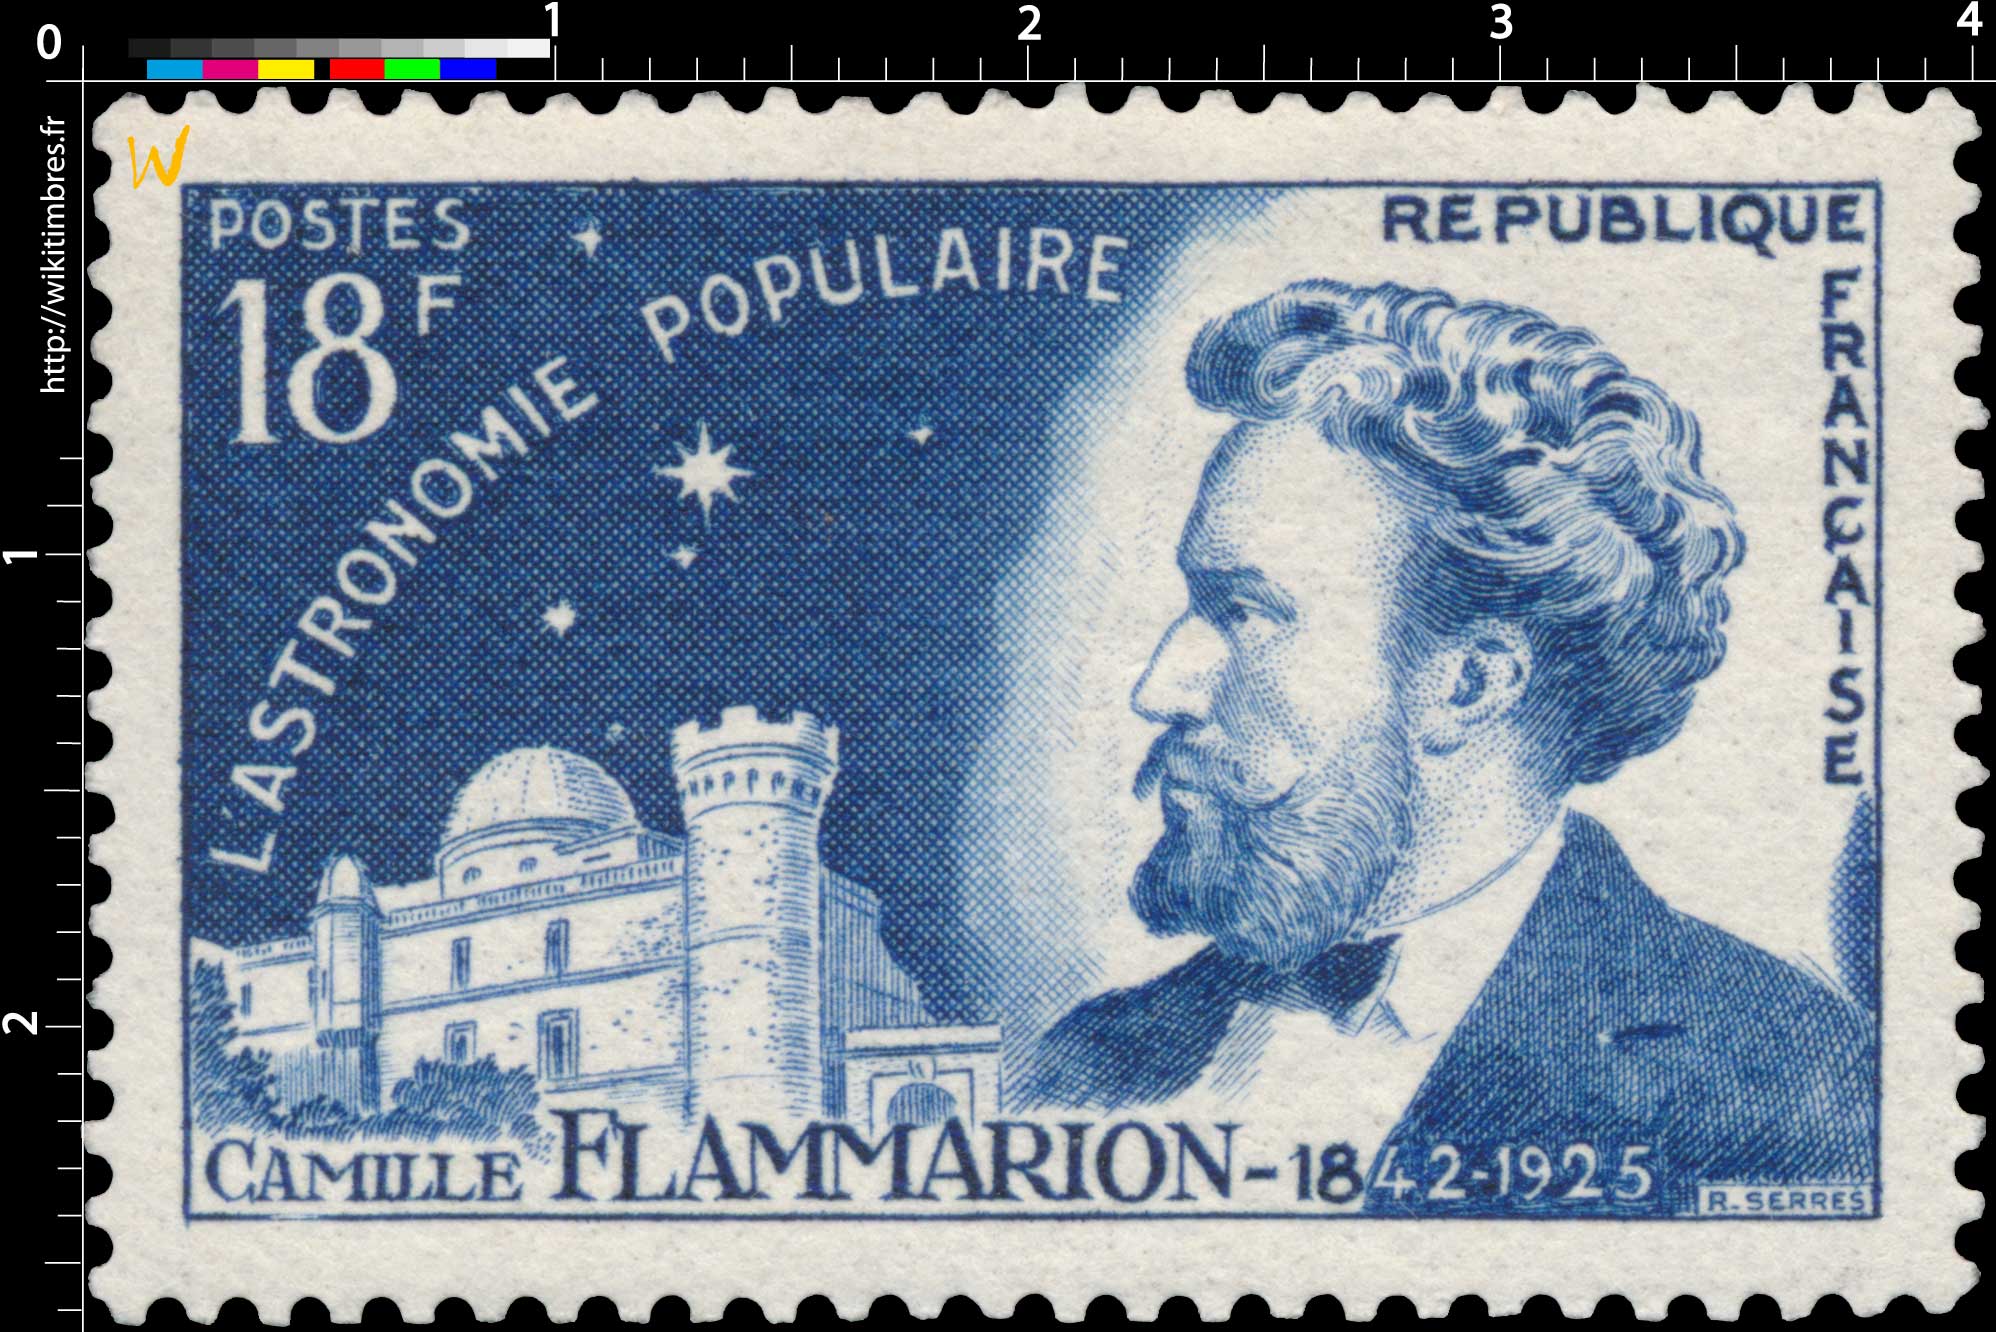 L'ASTRONOMIE POPULAIRE CAMILLE FLAMMARION-1842-1925